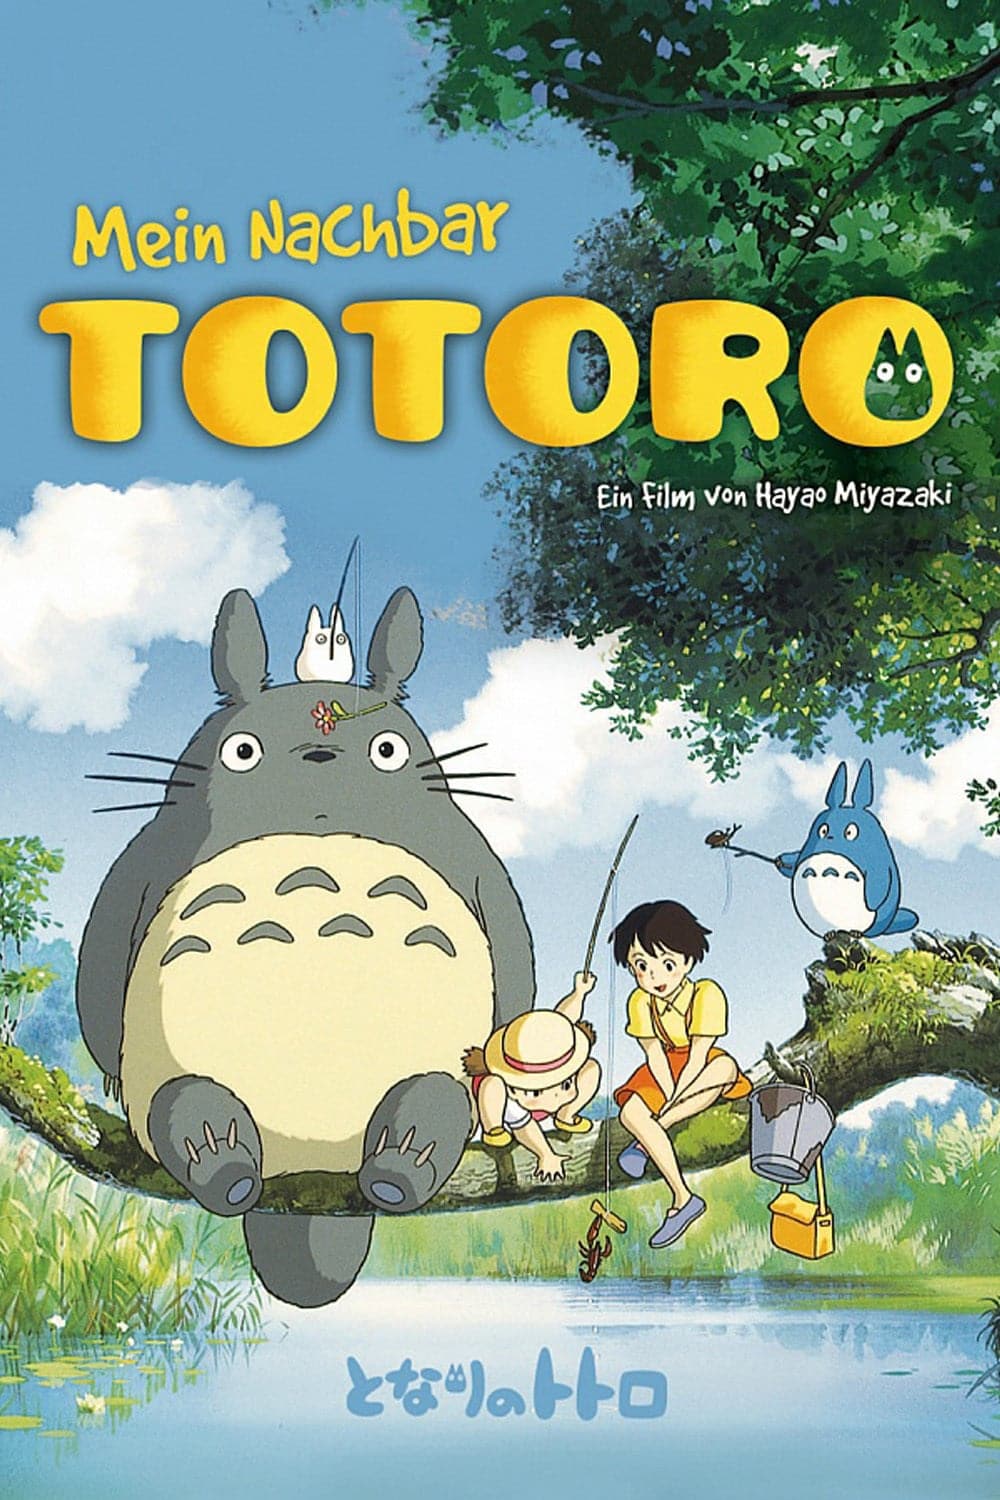 Plakat von "Mein Nachbar Totoro"